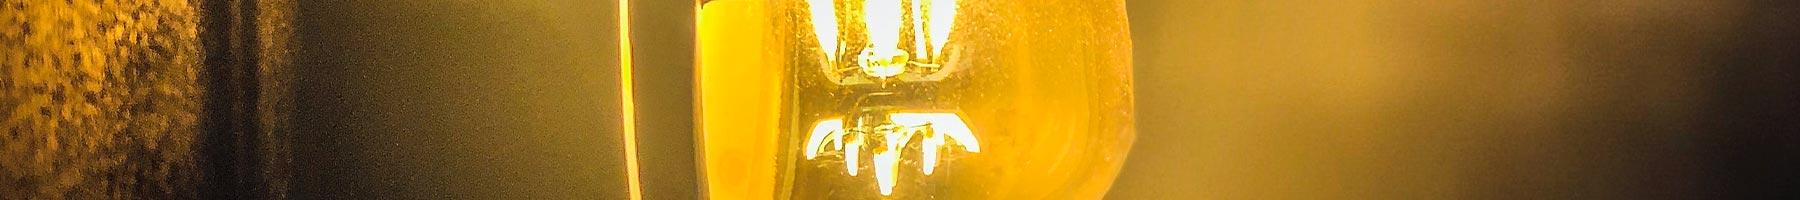 golden lightbulb